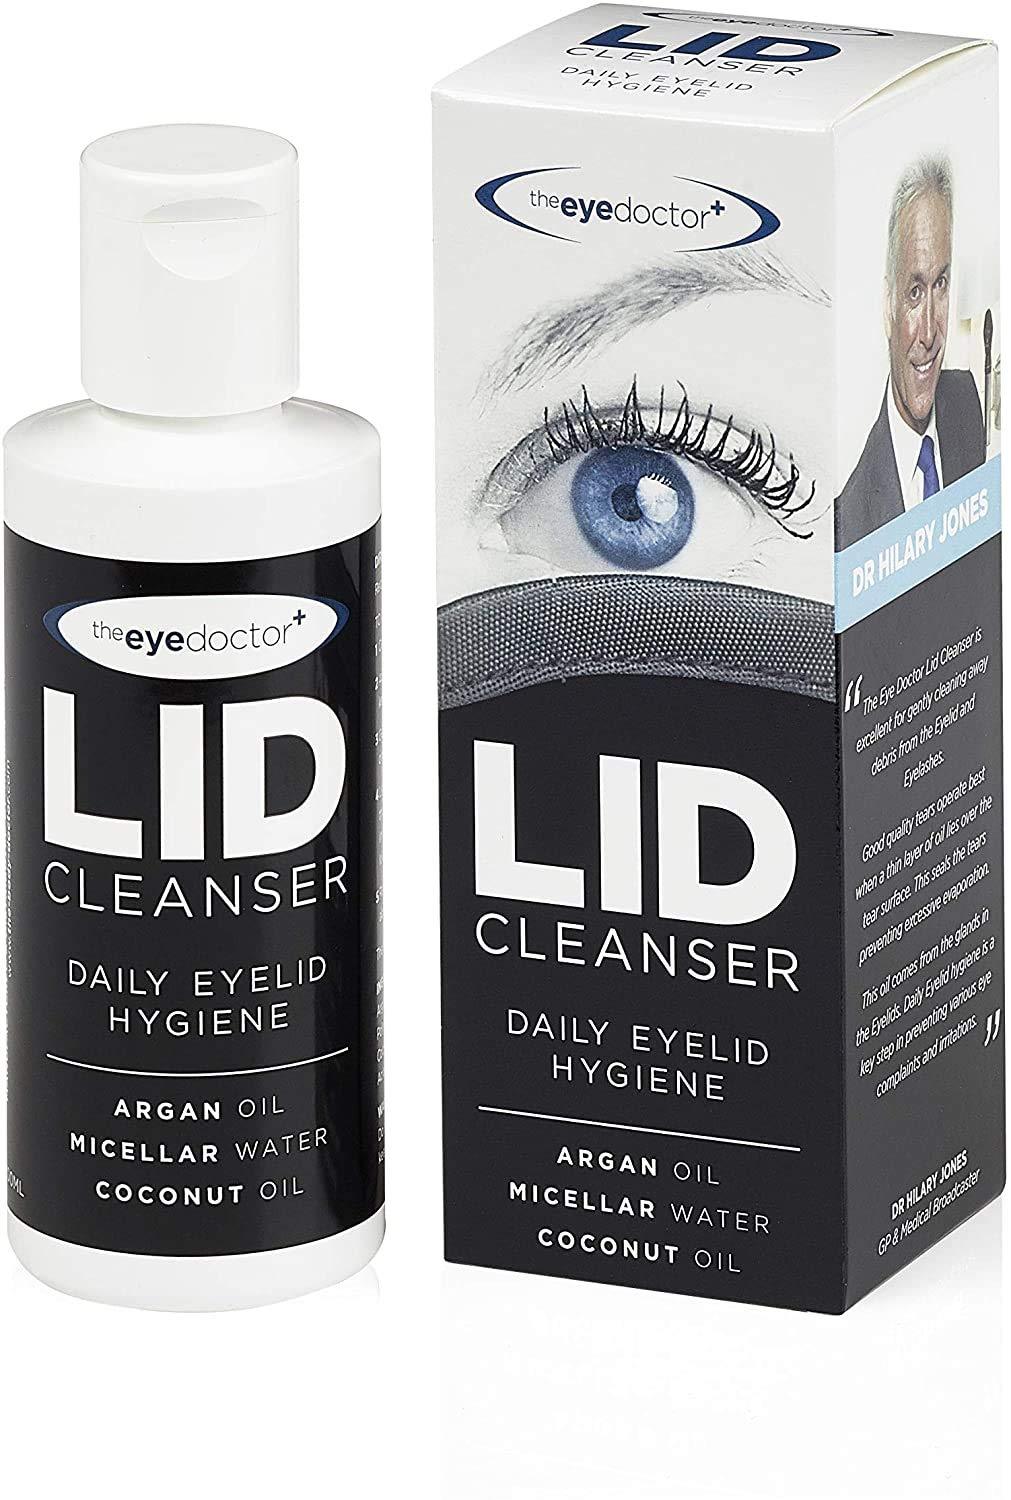 The Eye Doctor Lid Cleanser 100ml - welzo